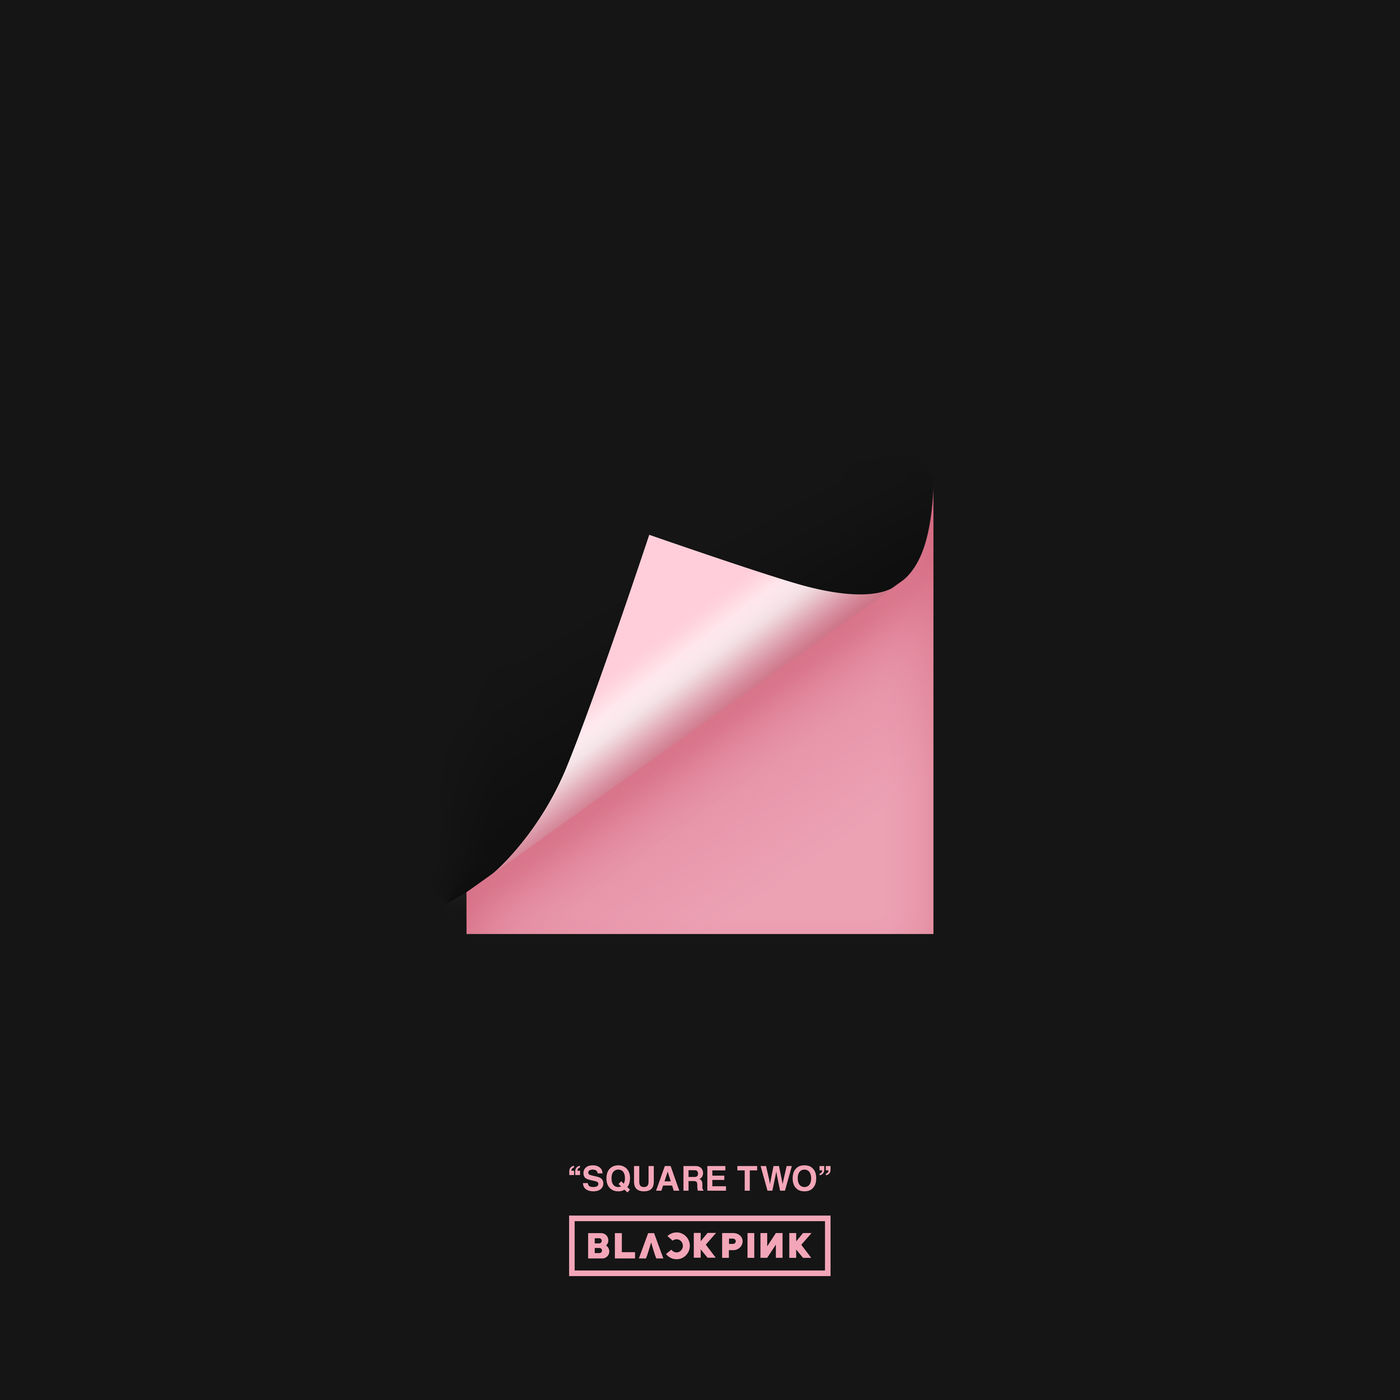 دانلود آلبوم BLACKPINK به نام SQUARE TOW (2016) با کیفیت FLAC 🔥